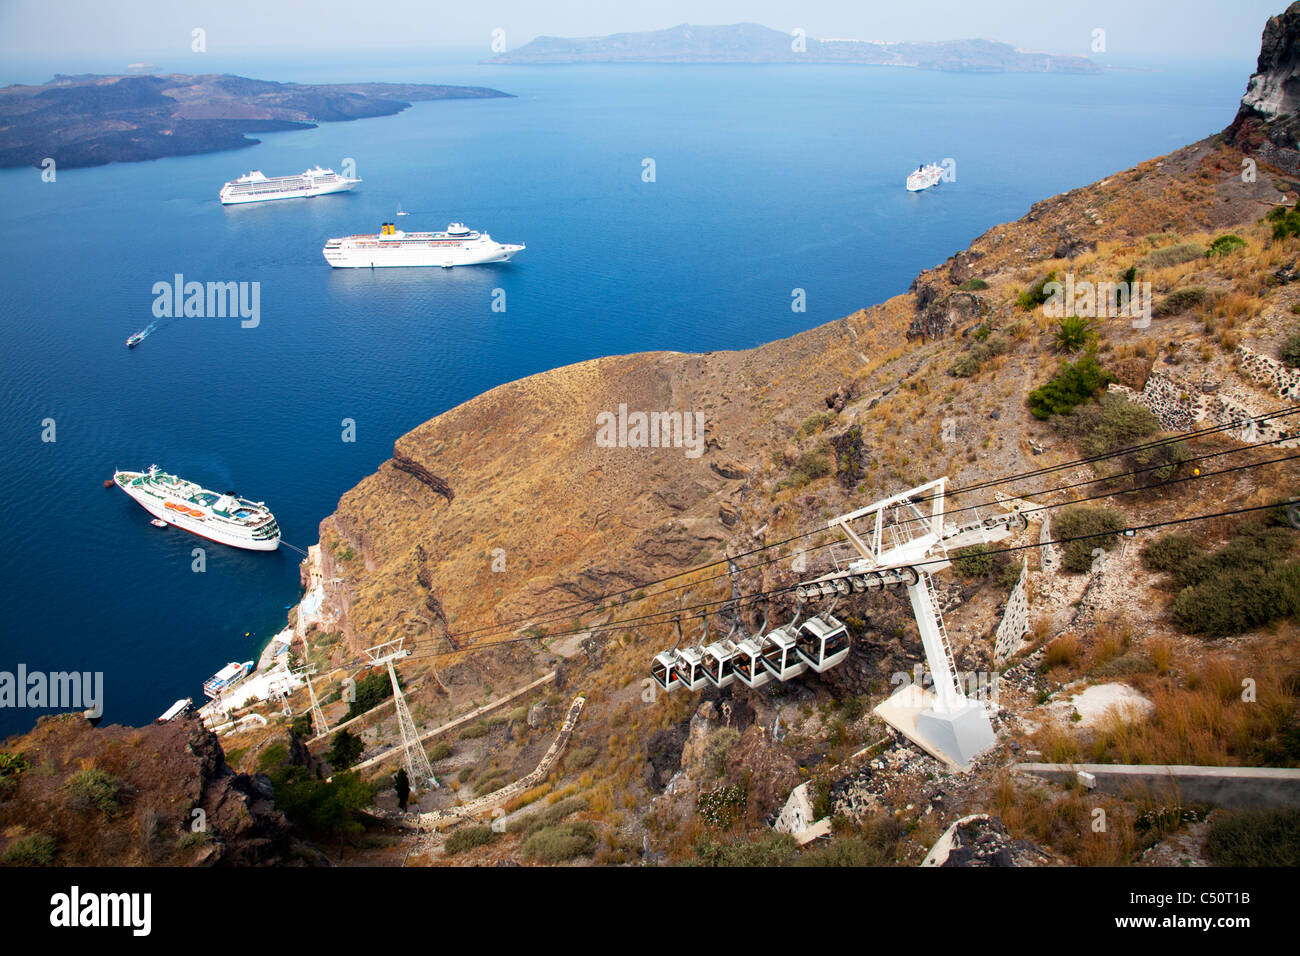 Typique de Santorin île grecque emblématique de téléphérique pour les bateaux de croisière sur la caldeira à Thira Banque D'Images